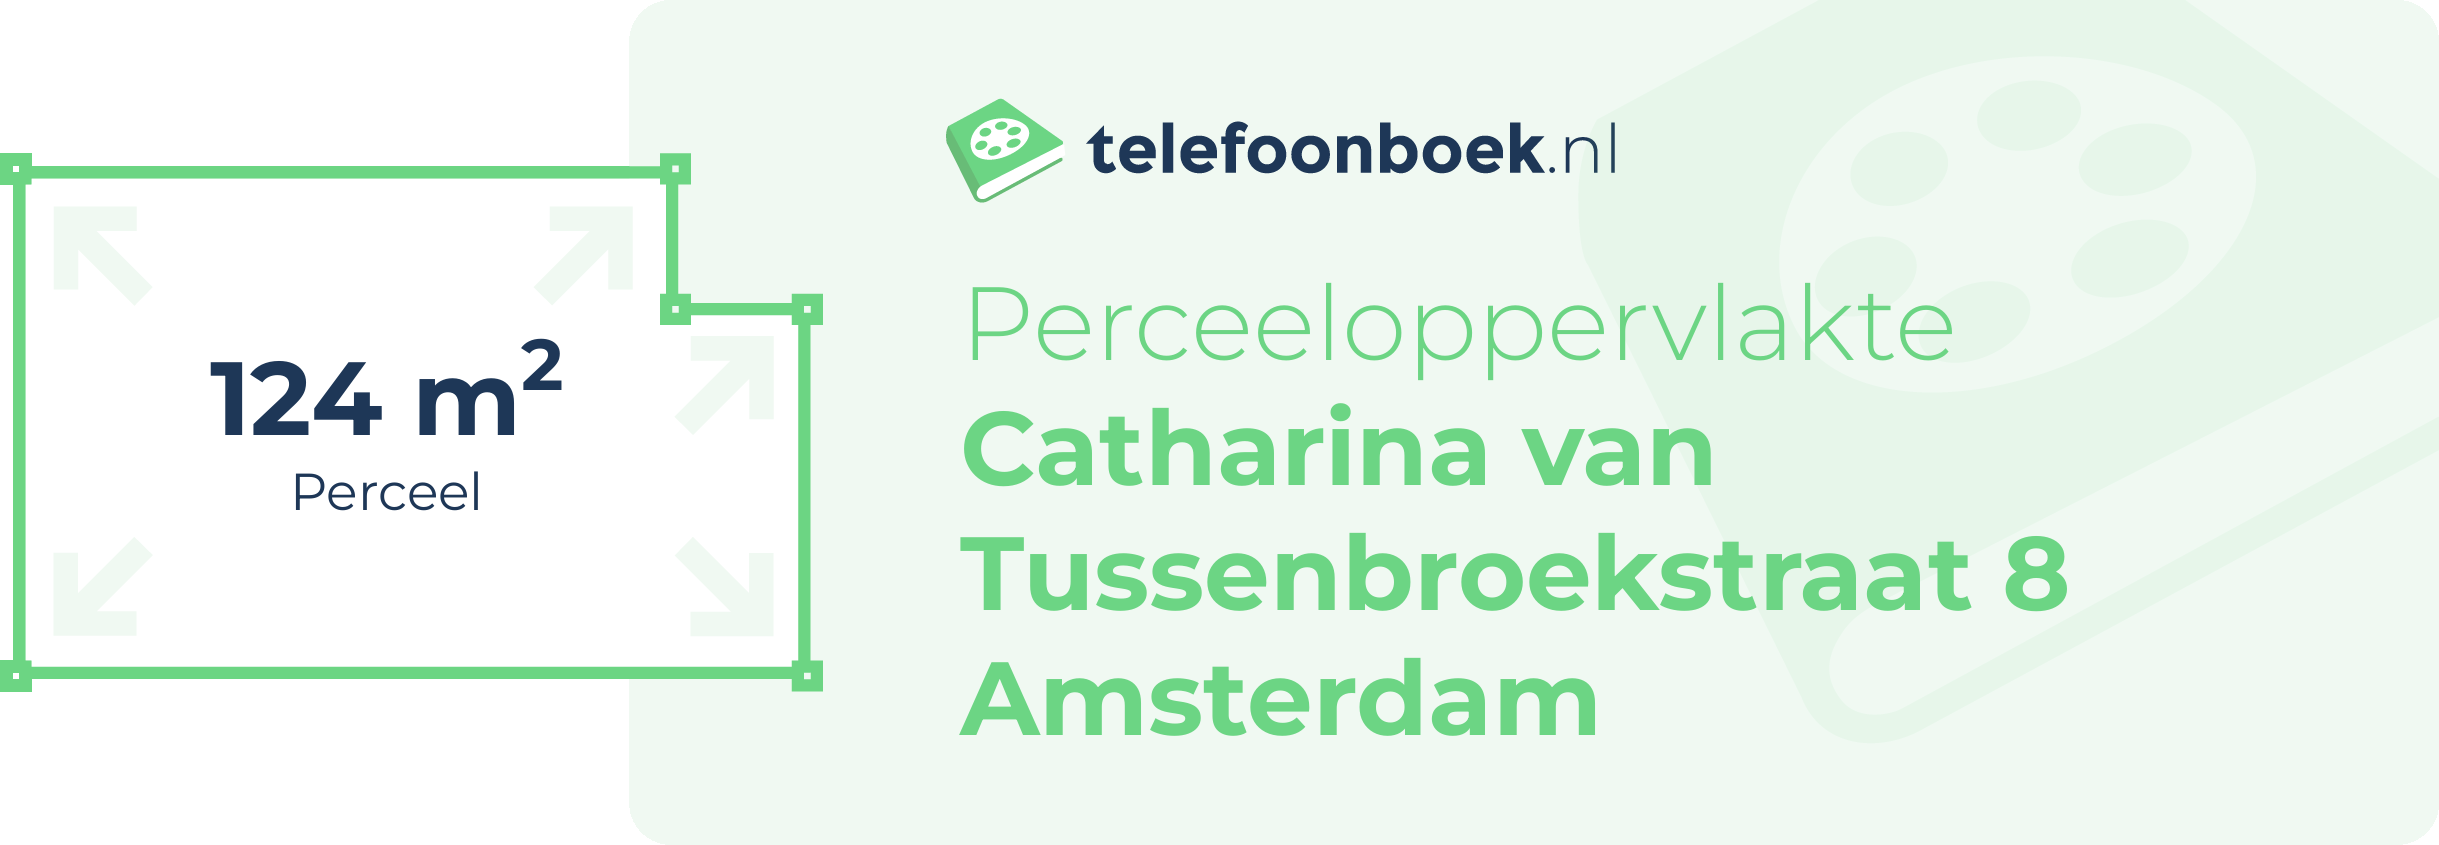 Perceeloppervlakte Catharina Van Tussenbroekstraat 8 Amsterdam